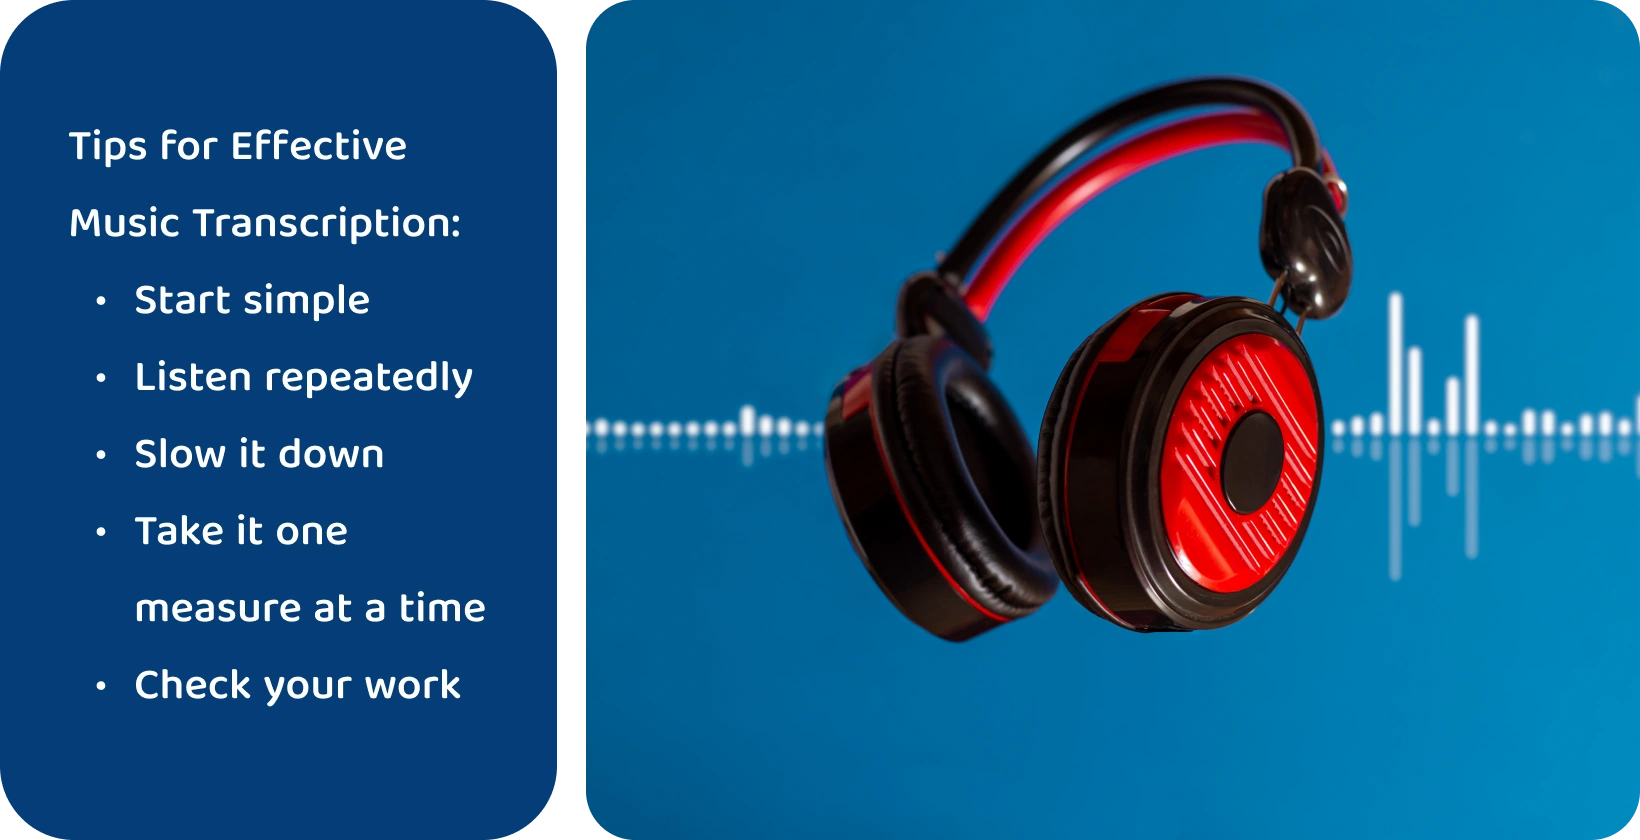 Kõrvaklapid lainekuju taustal, mis kujutavad endast tööriistu muusika transkriptsiooni täiustamiseks fokusseeritud ja korduva kuulamise kaudu.